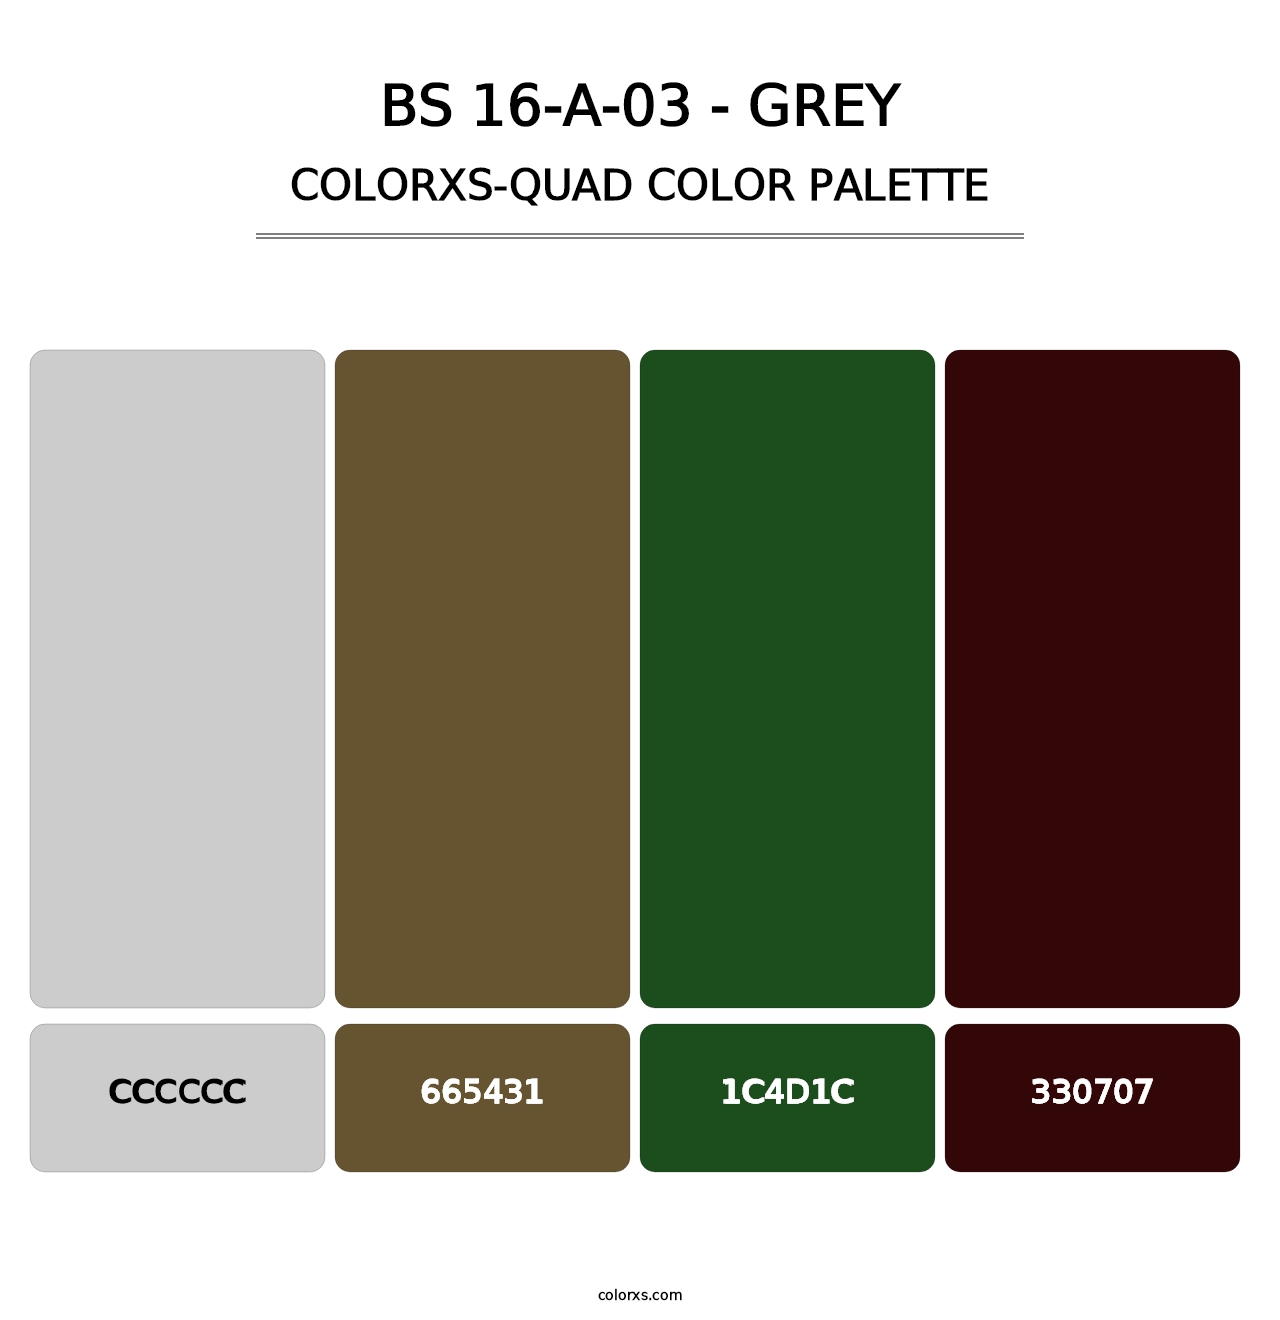 BS 16-A-03 - Grey - Colorxs Quad Palette